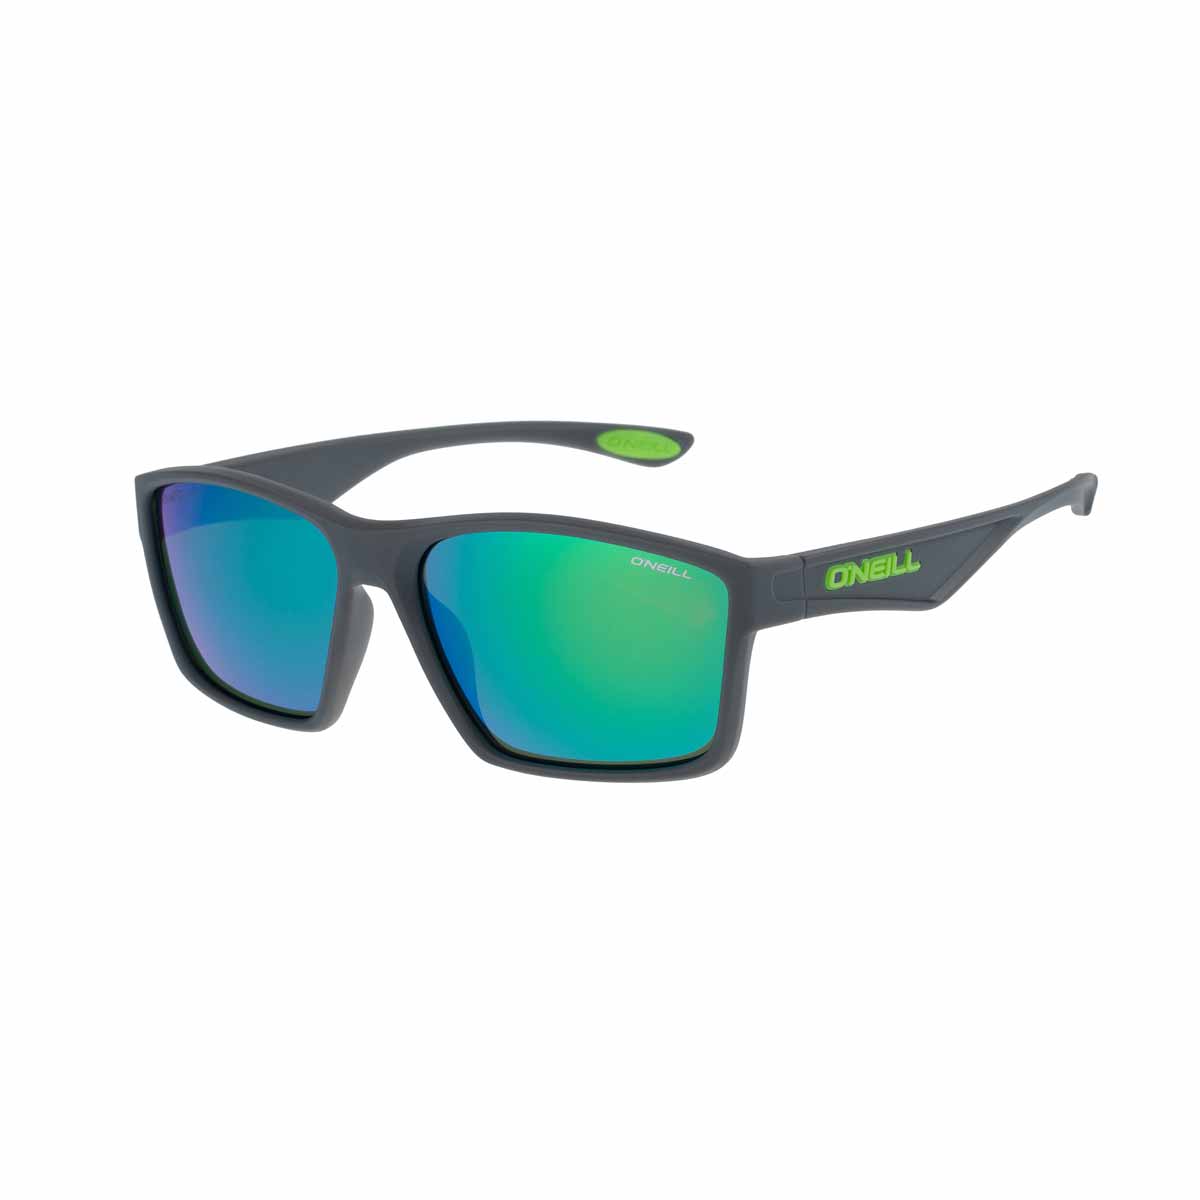 O'Neill 9024 2.0 Sunglasses – 108P Matte grey / Green Green mirror